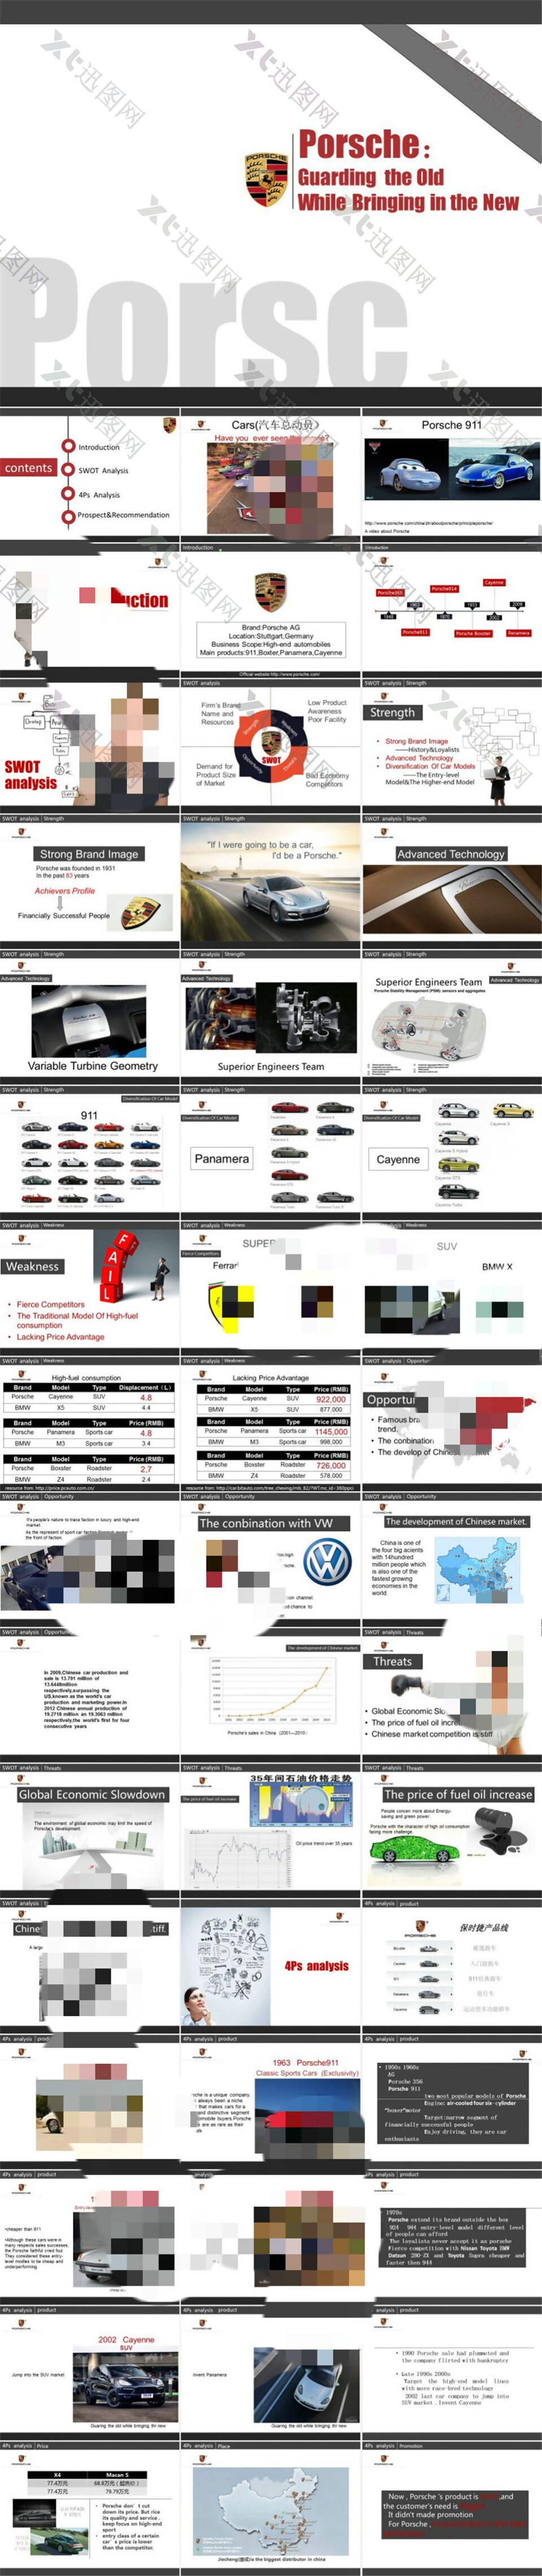 保时捷（Porsche）文化 产品与市场分析汽车行业ppt模板